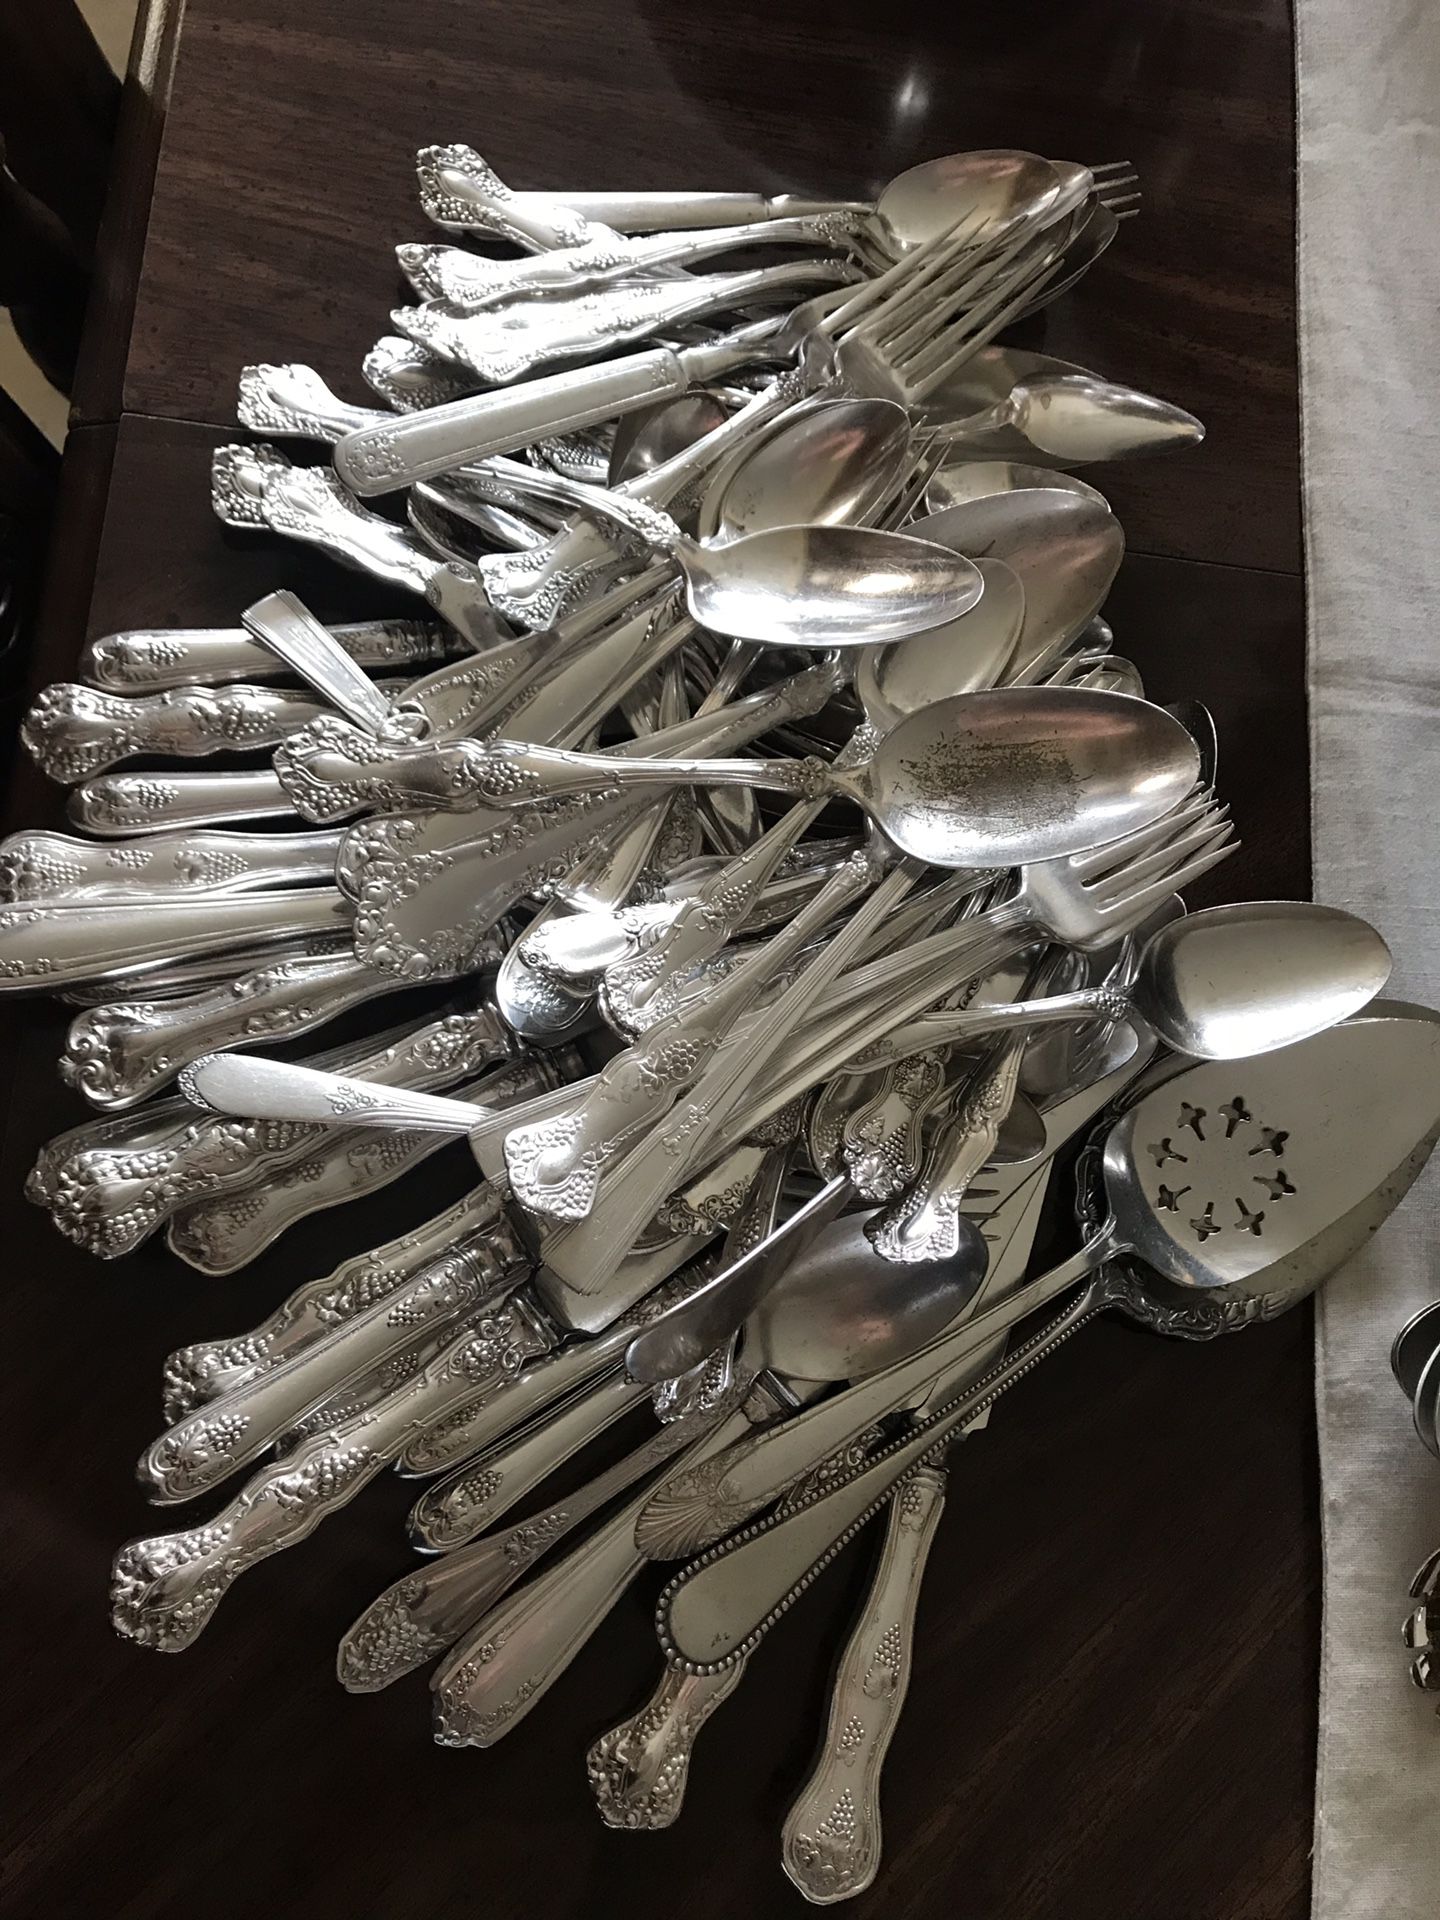 Vintage silverplated dessert/tea spoons